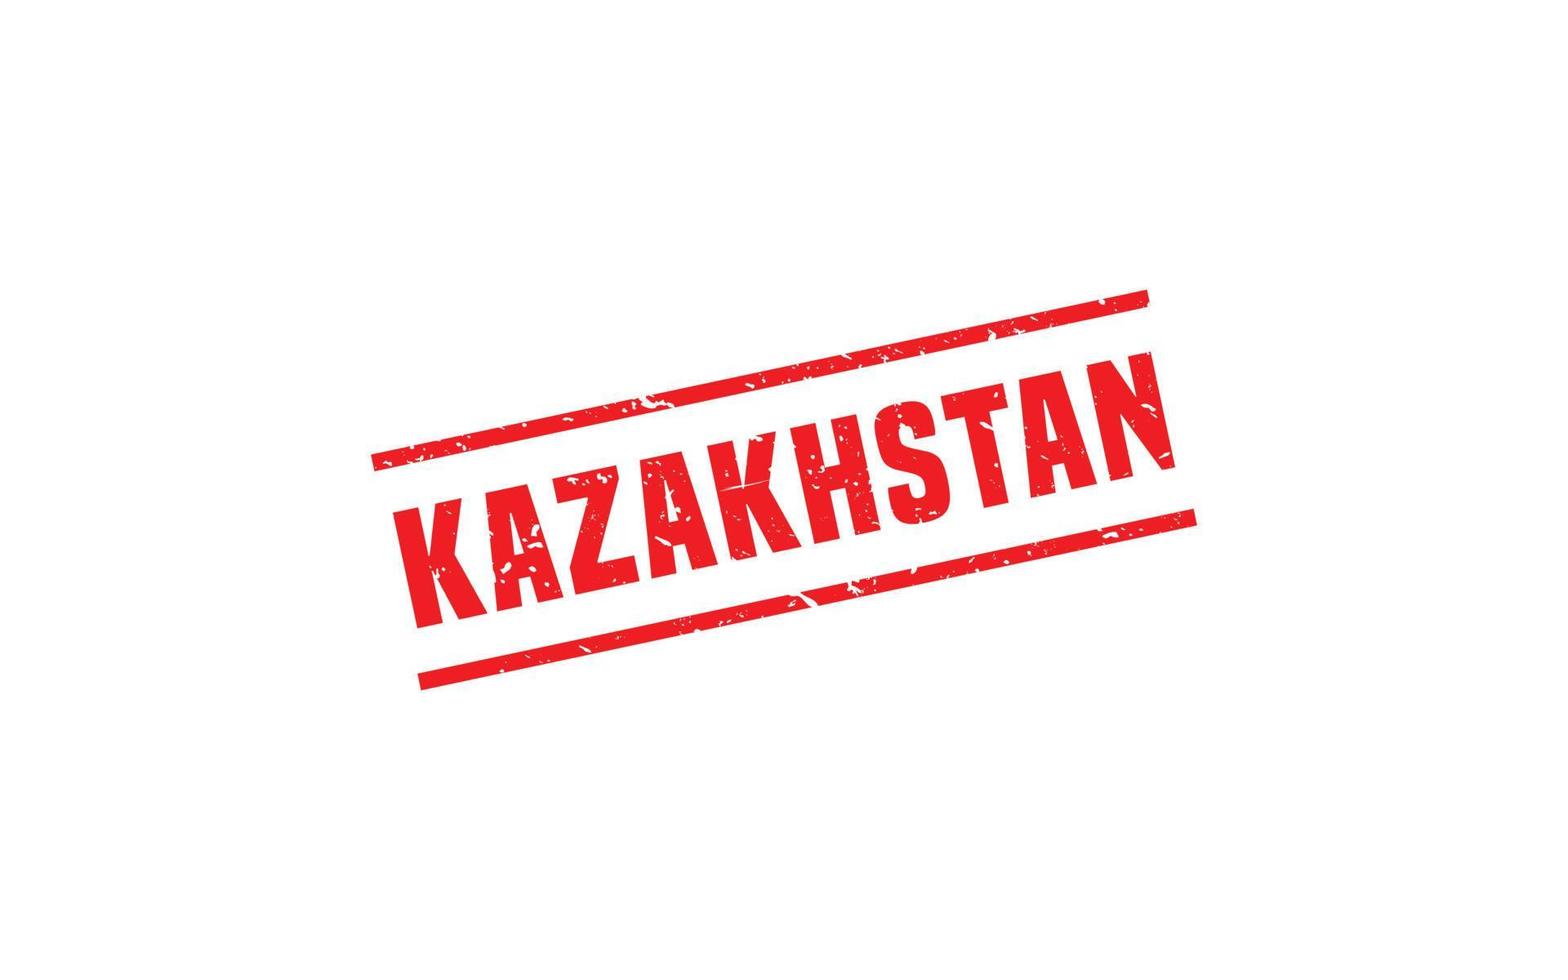 Kazakistan francobollo gomma da cancellare con grunge stile su bianca sfondo vettore